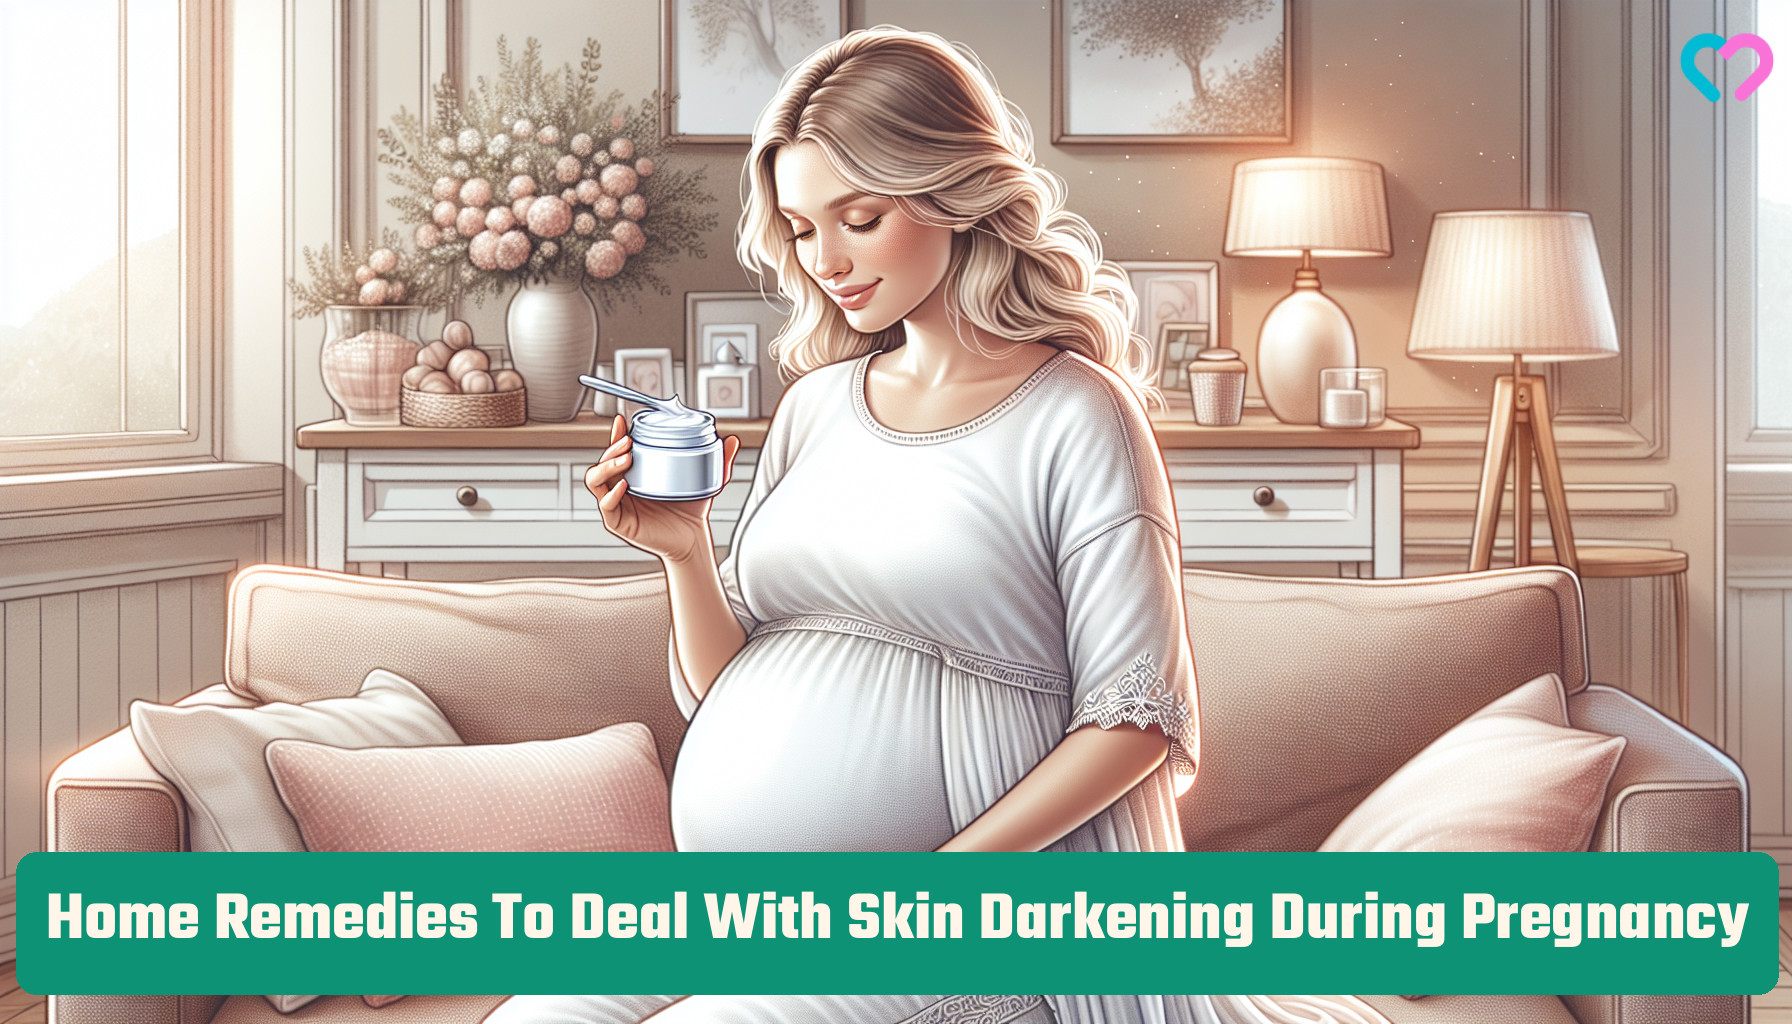 Skin Darkening During Pregnancy_illustration